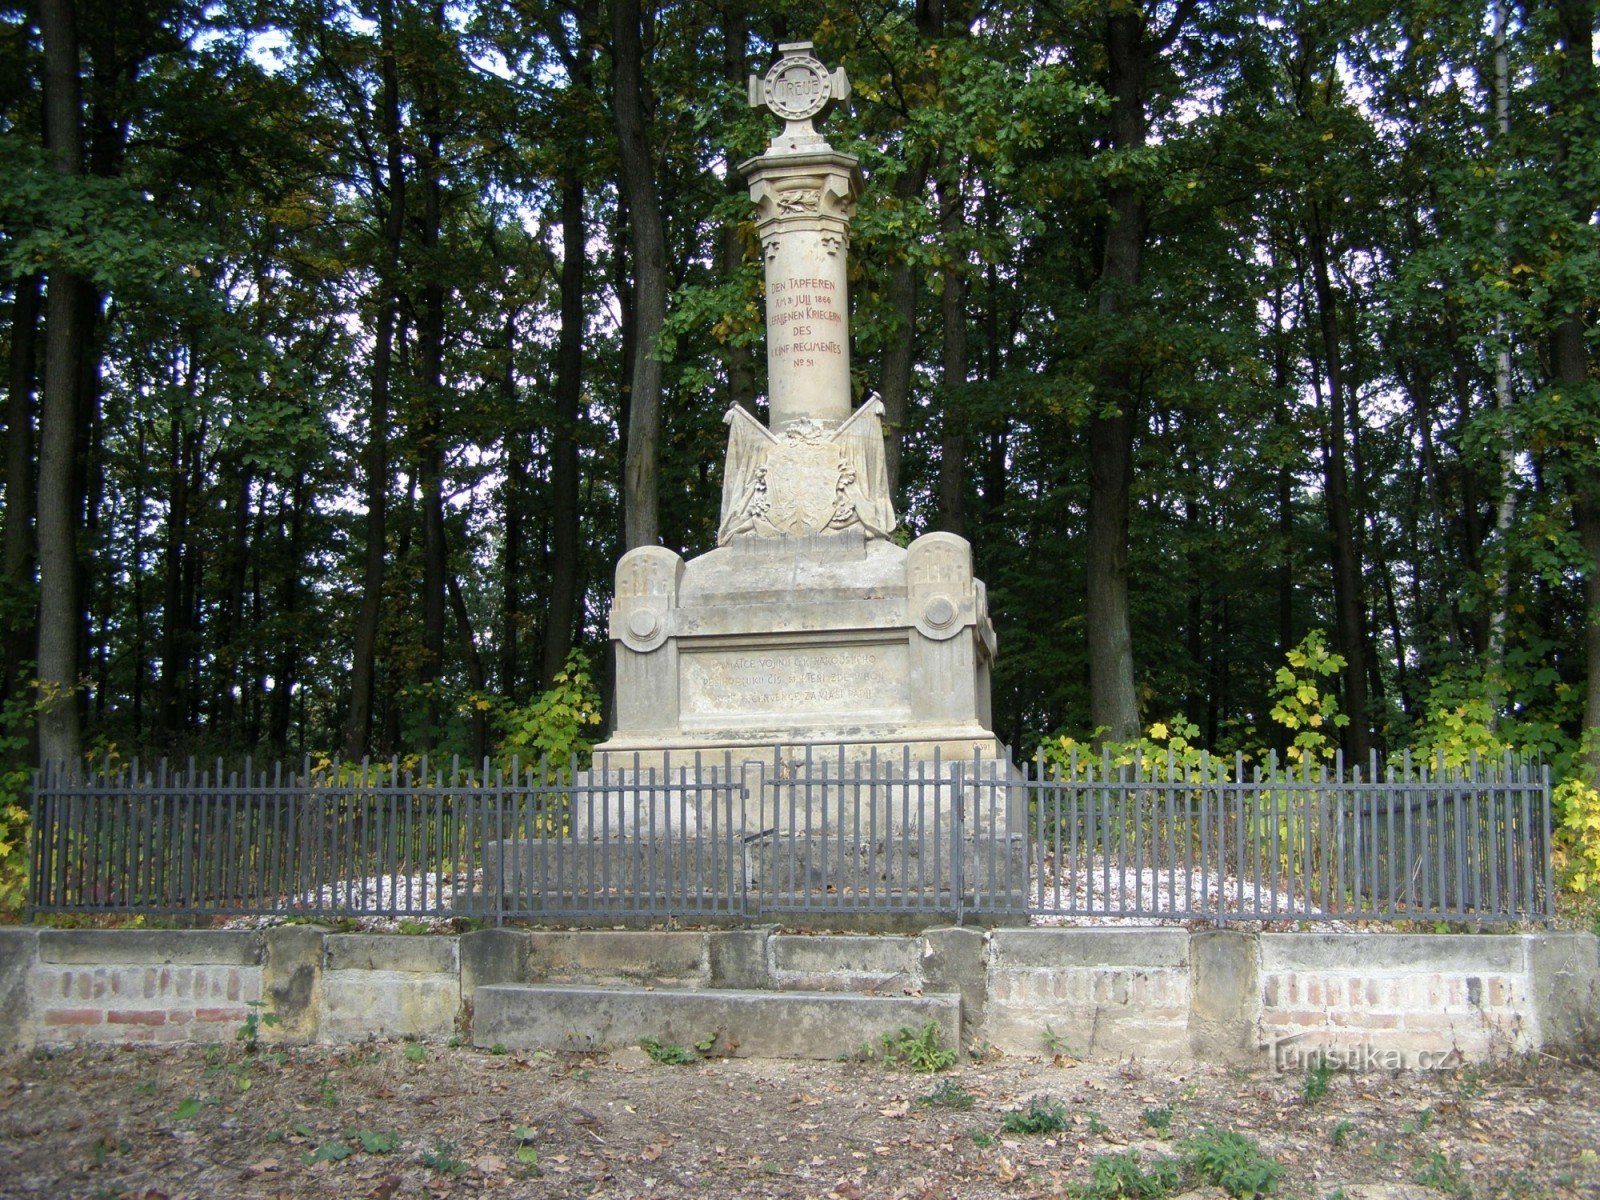 Les Svíb - Σοκάκι των νεκρών, μνημείο στο αυστριακό σύνταγμα πεδίου Νο. 51